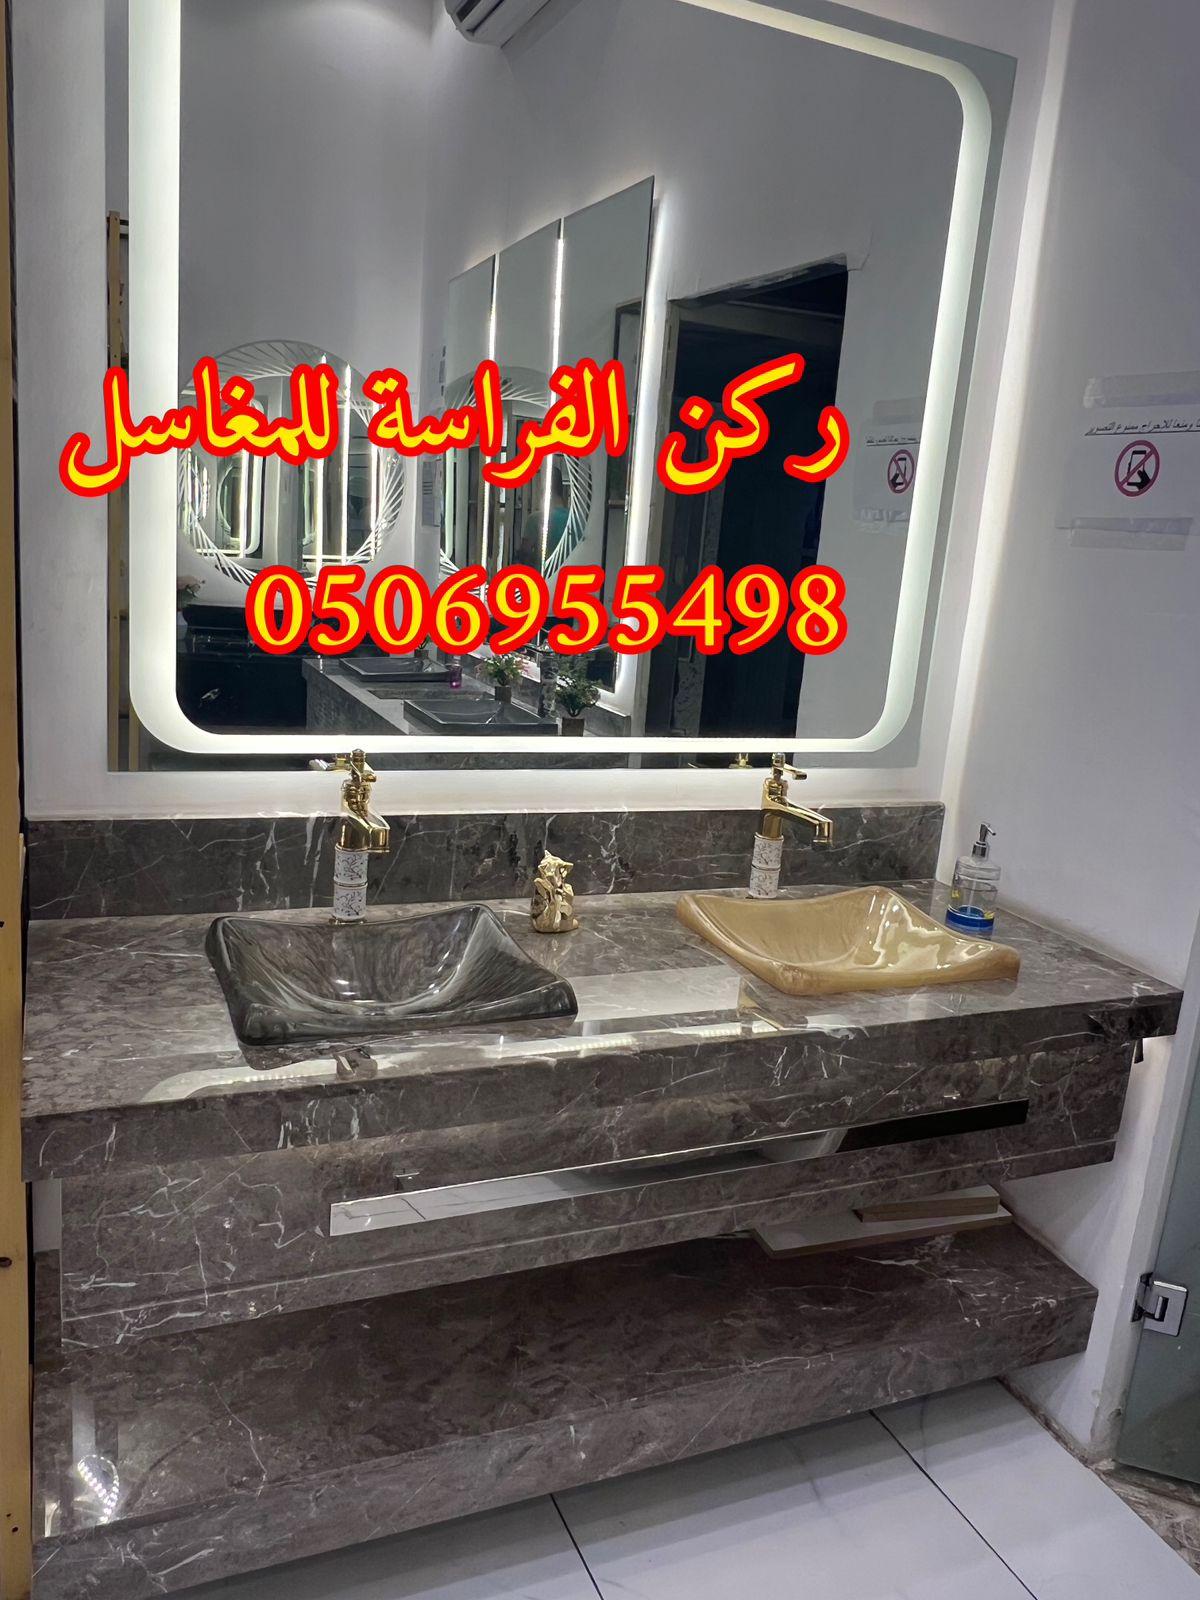 الرياض - احواض مغاسل رخام في الرياض,0506955498 469595347